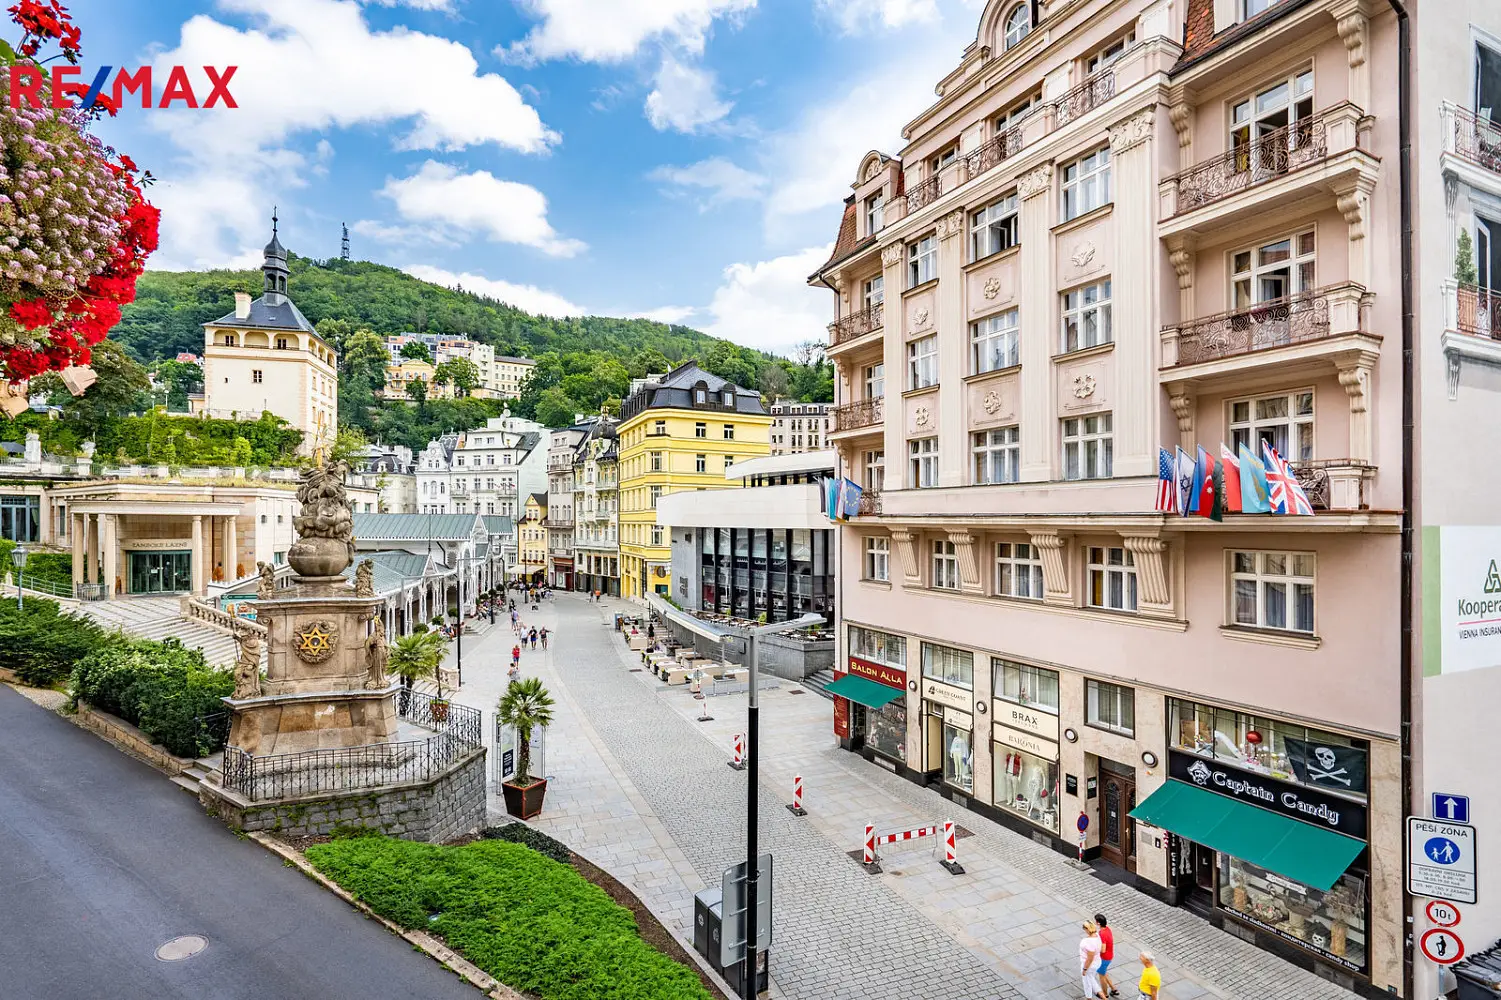 Tržiště, Karlovy Vary